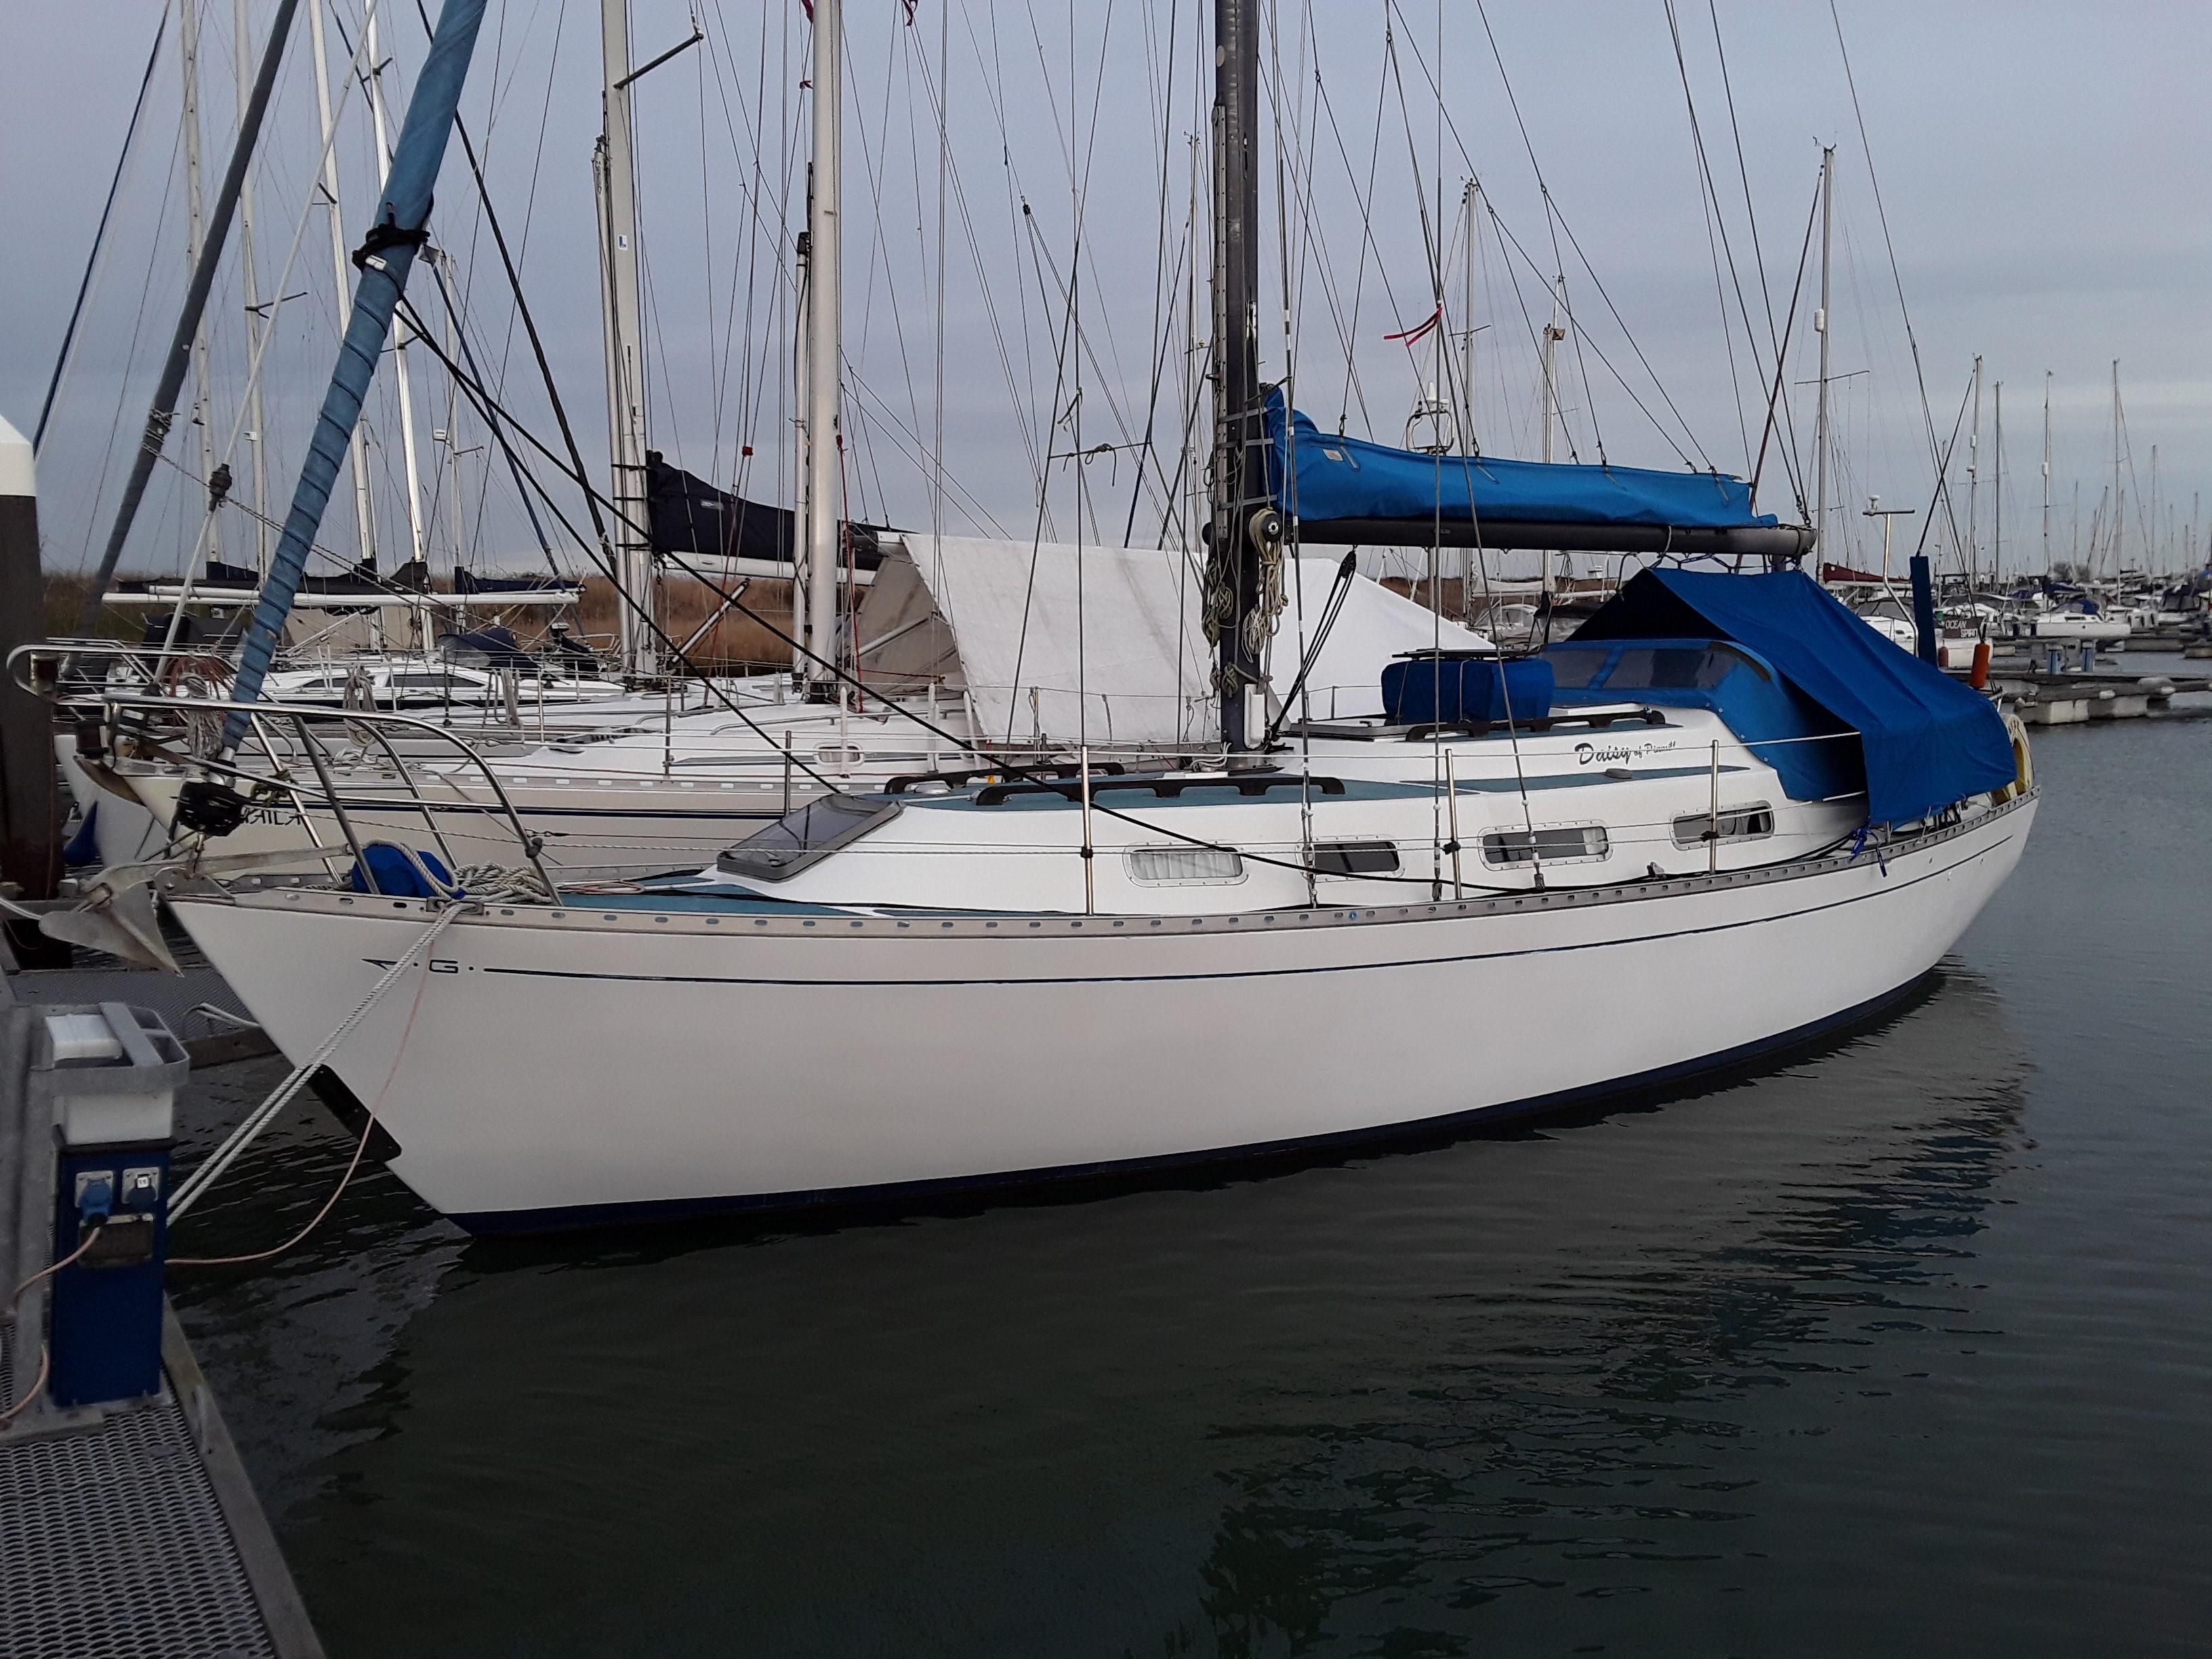 grampian 34 sailboat for sale